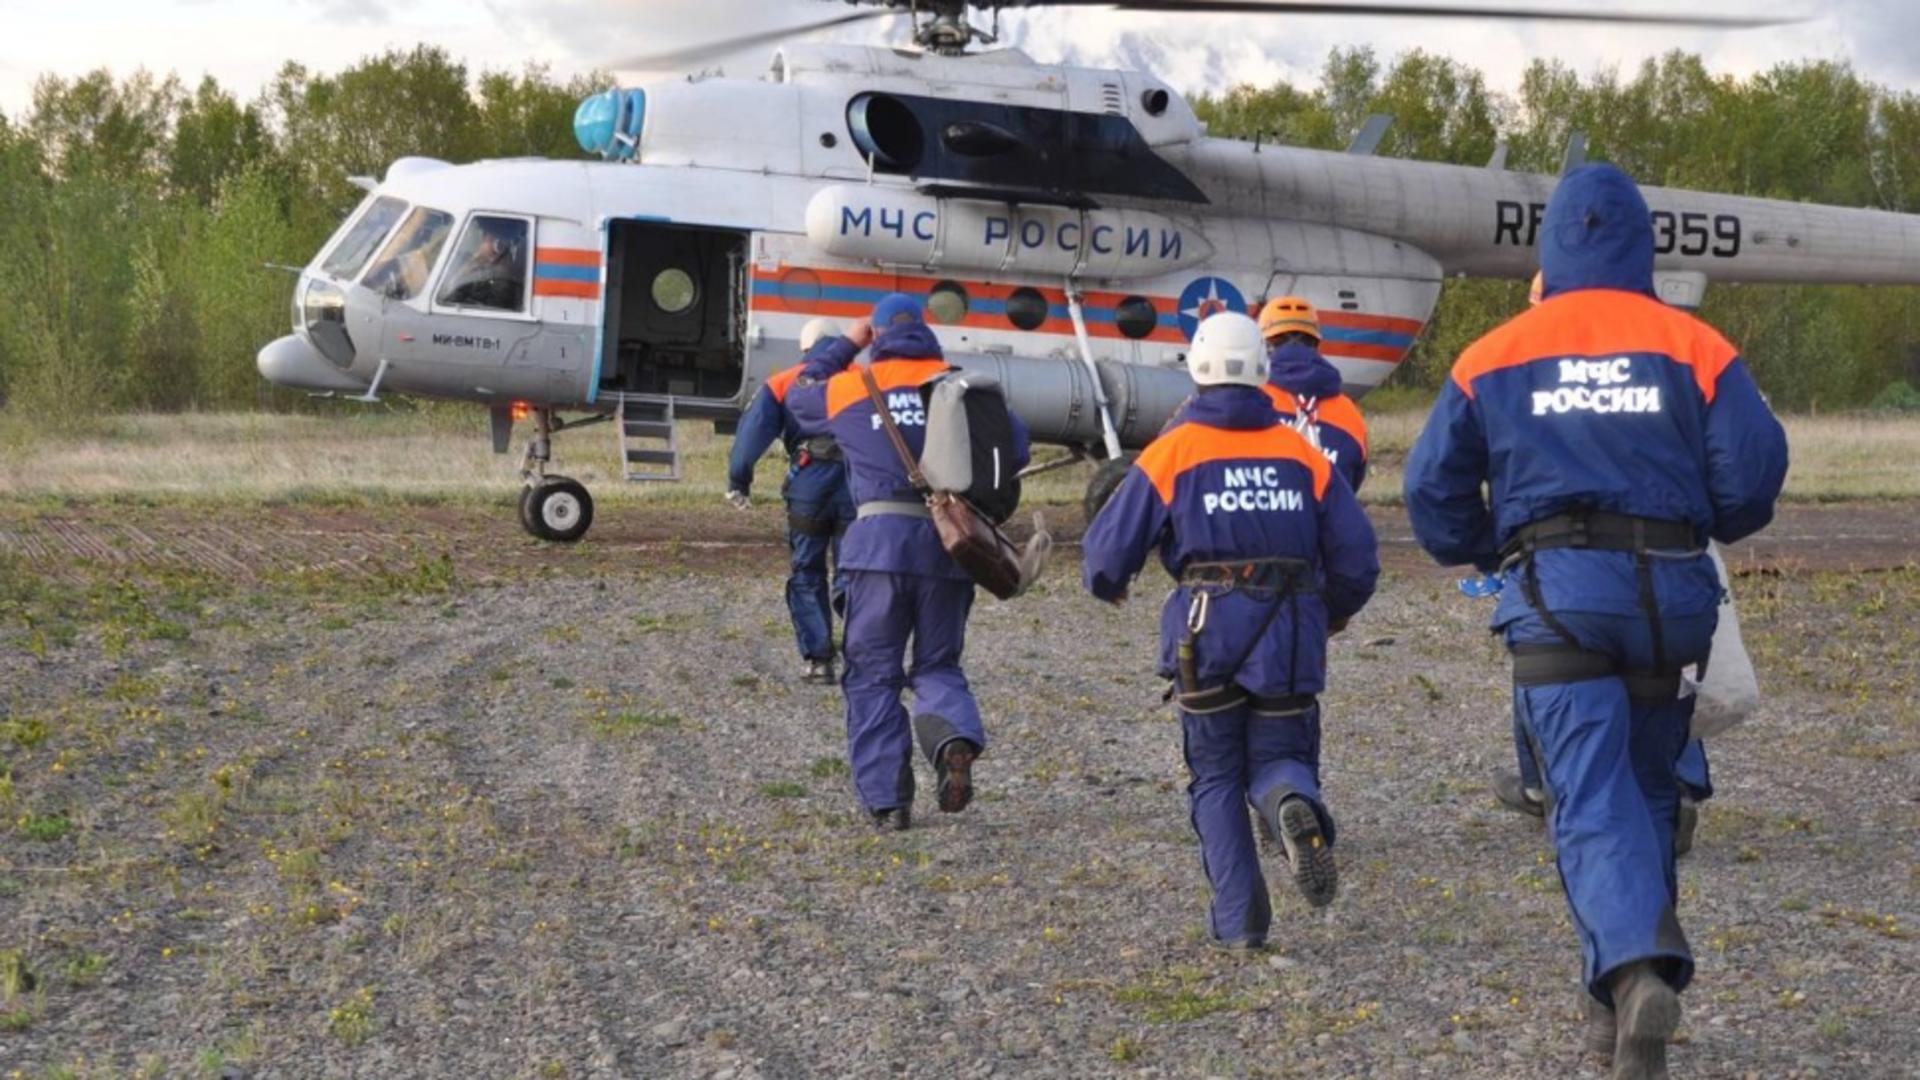 3 persoane au murit într-un accident de elicopter, în Rusia. Foto/Profimedia